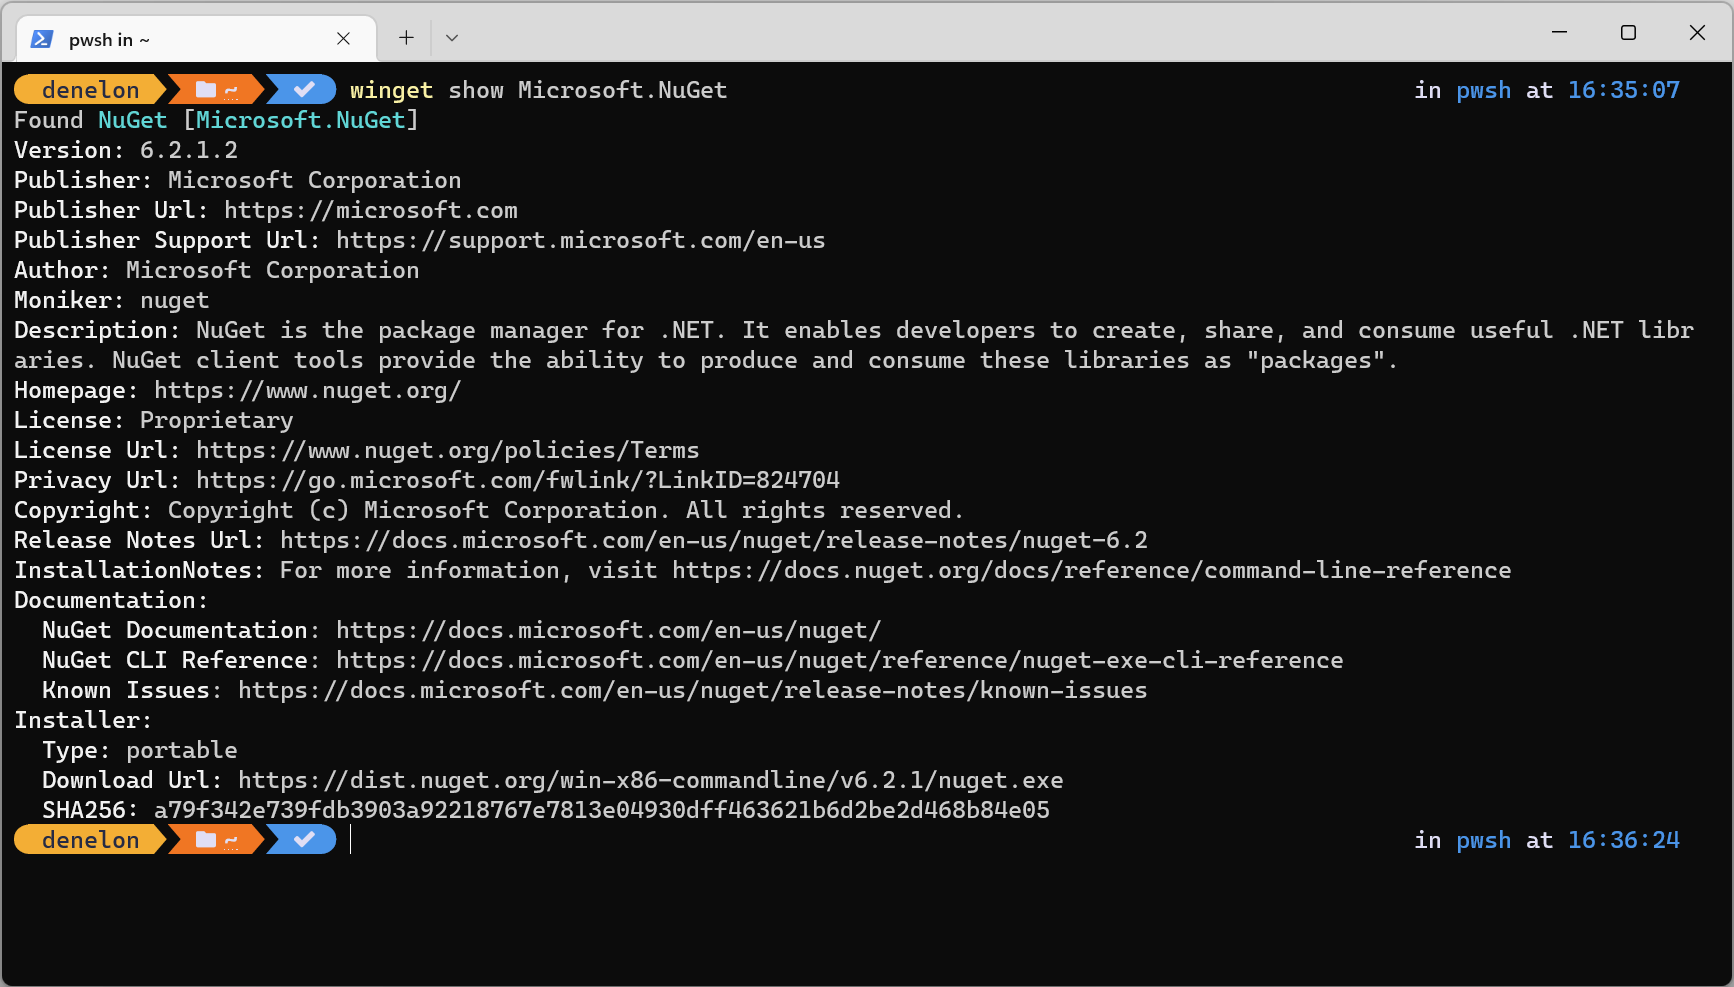 dotnet.exe command prompt window